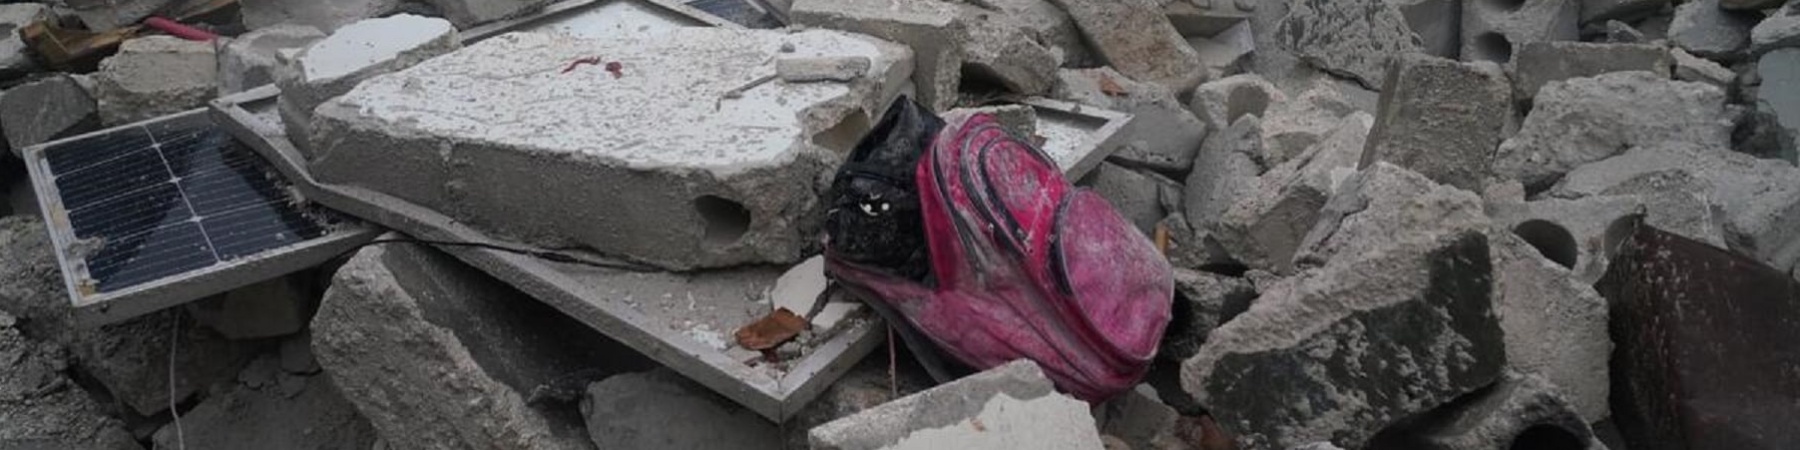 Zaino tra e macerie di un palazzo crollato durante il terremoto in Siria e Turchia